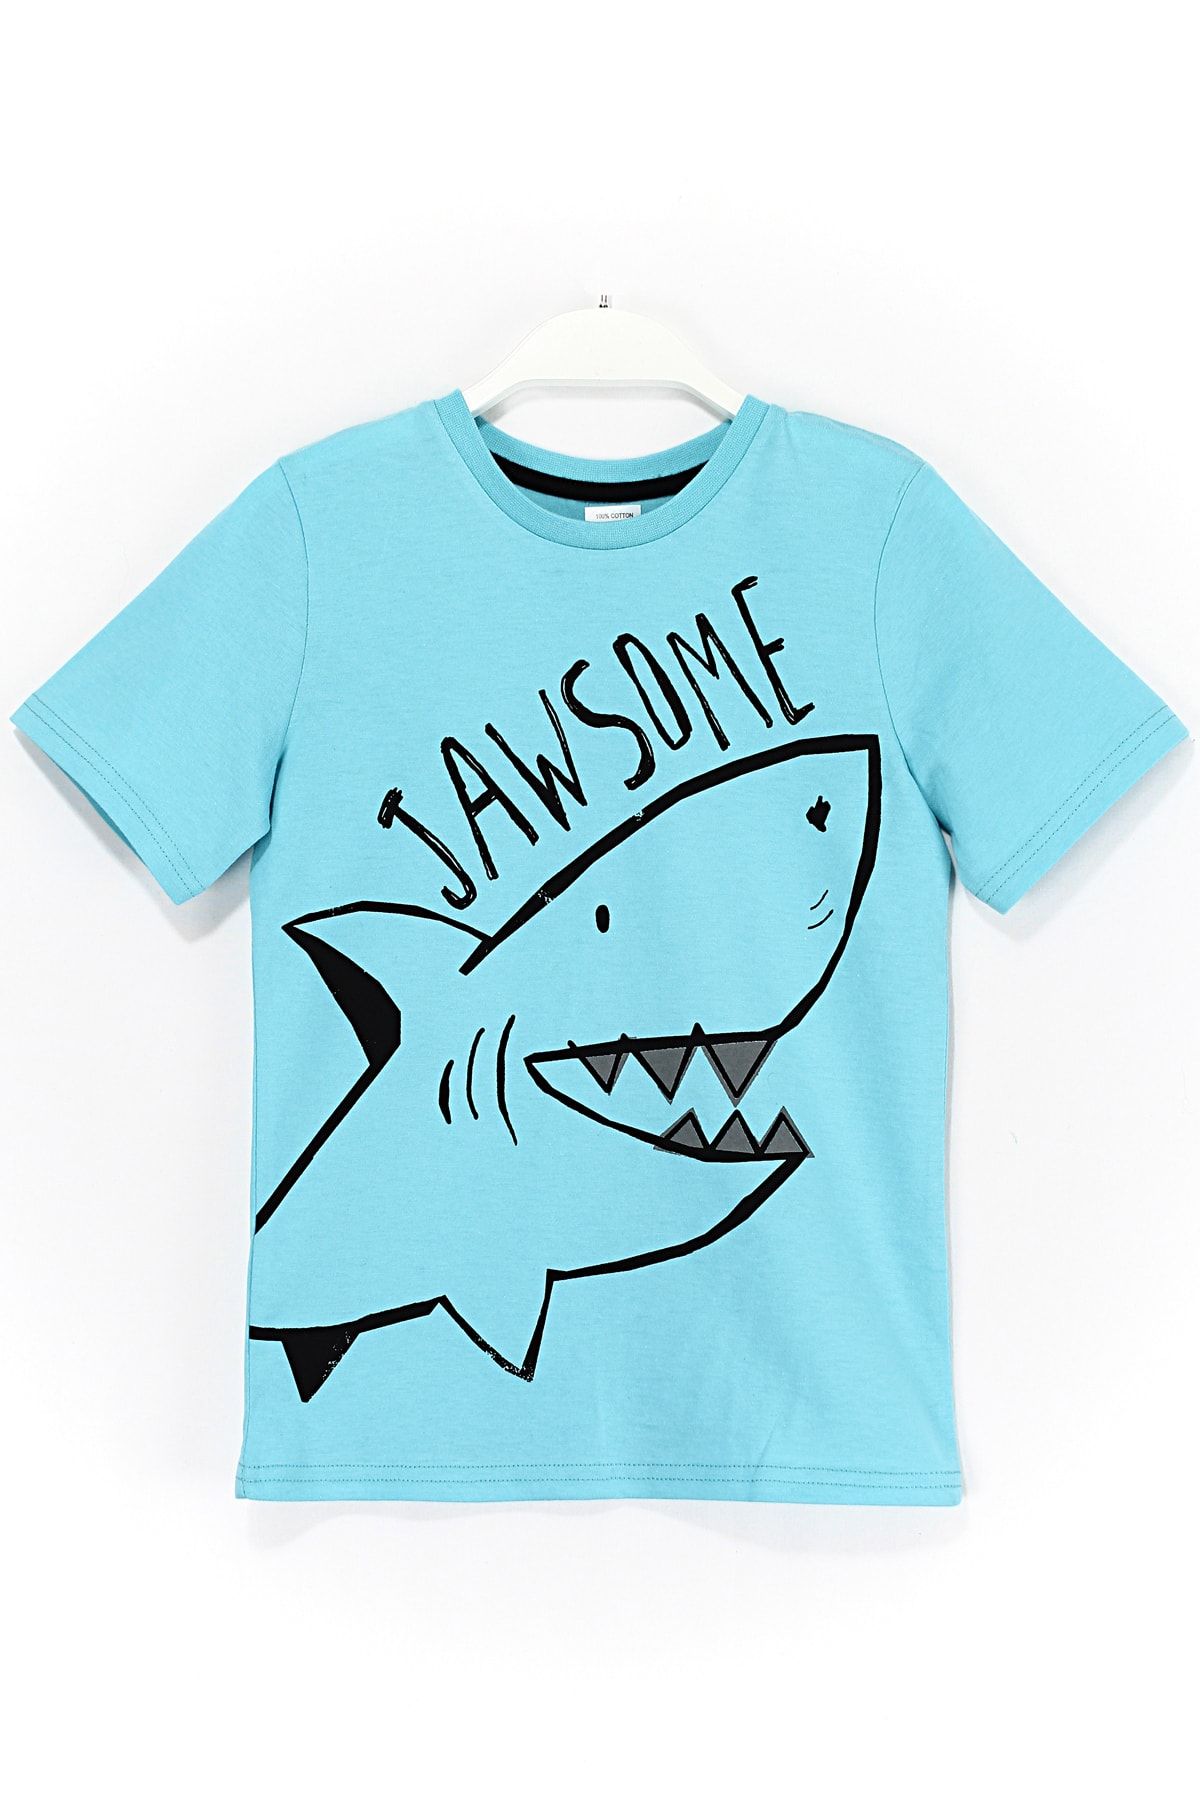 DobaKids Köpek Balığı Jawsome Baskılı Erkek Çocuk T-shirt 2 - 9 Yaş Aralığı Turkuaz